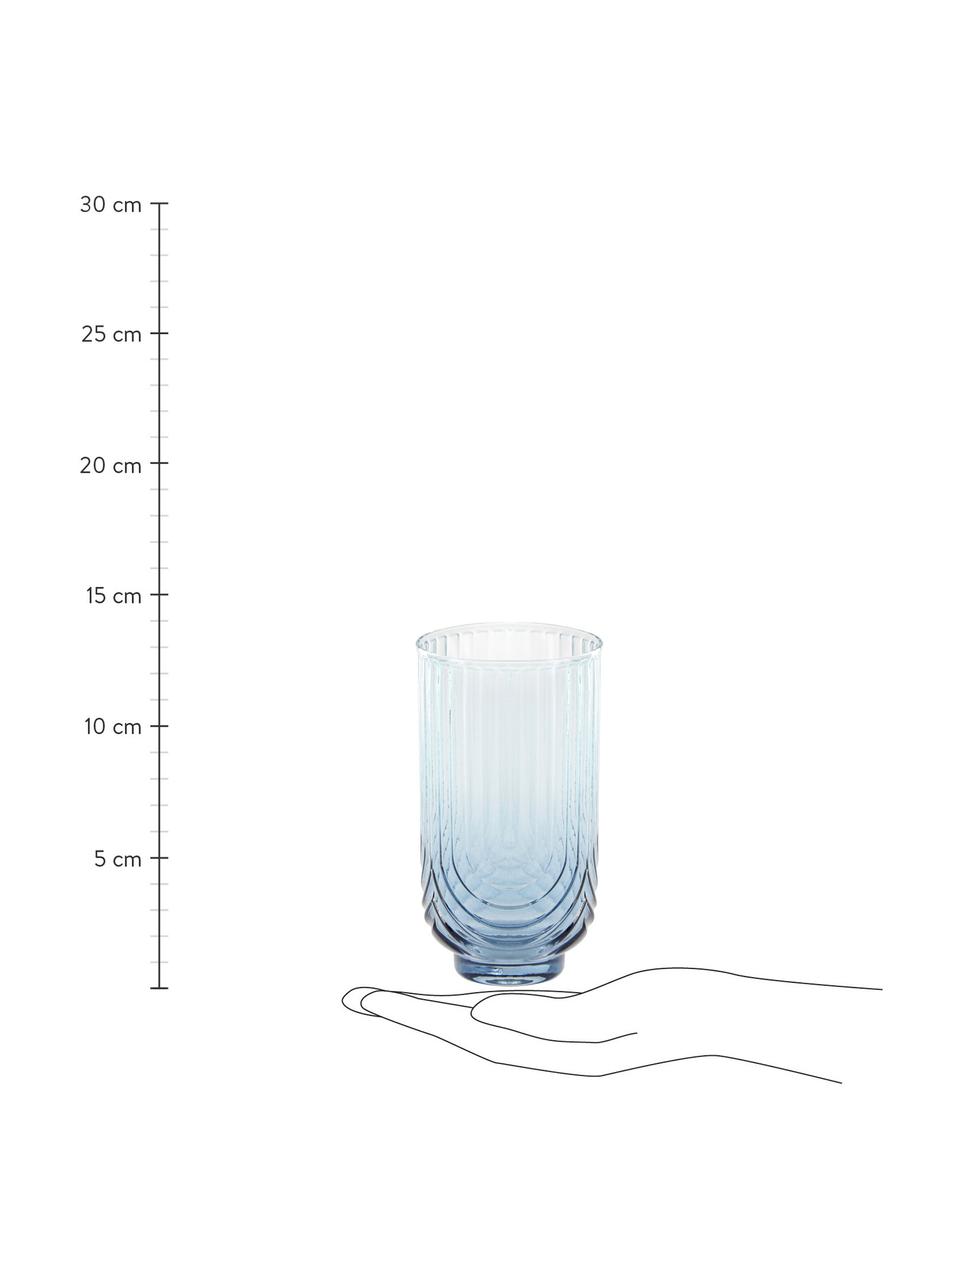 Bicchiere acqua con sfumatura blu/trasparente Imani 4 pz, Vetro, Blu, trasparente, Ø 8 x Alt. 14 cm, 450 ml